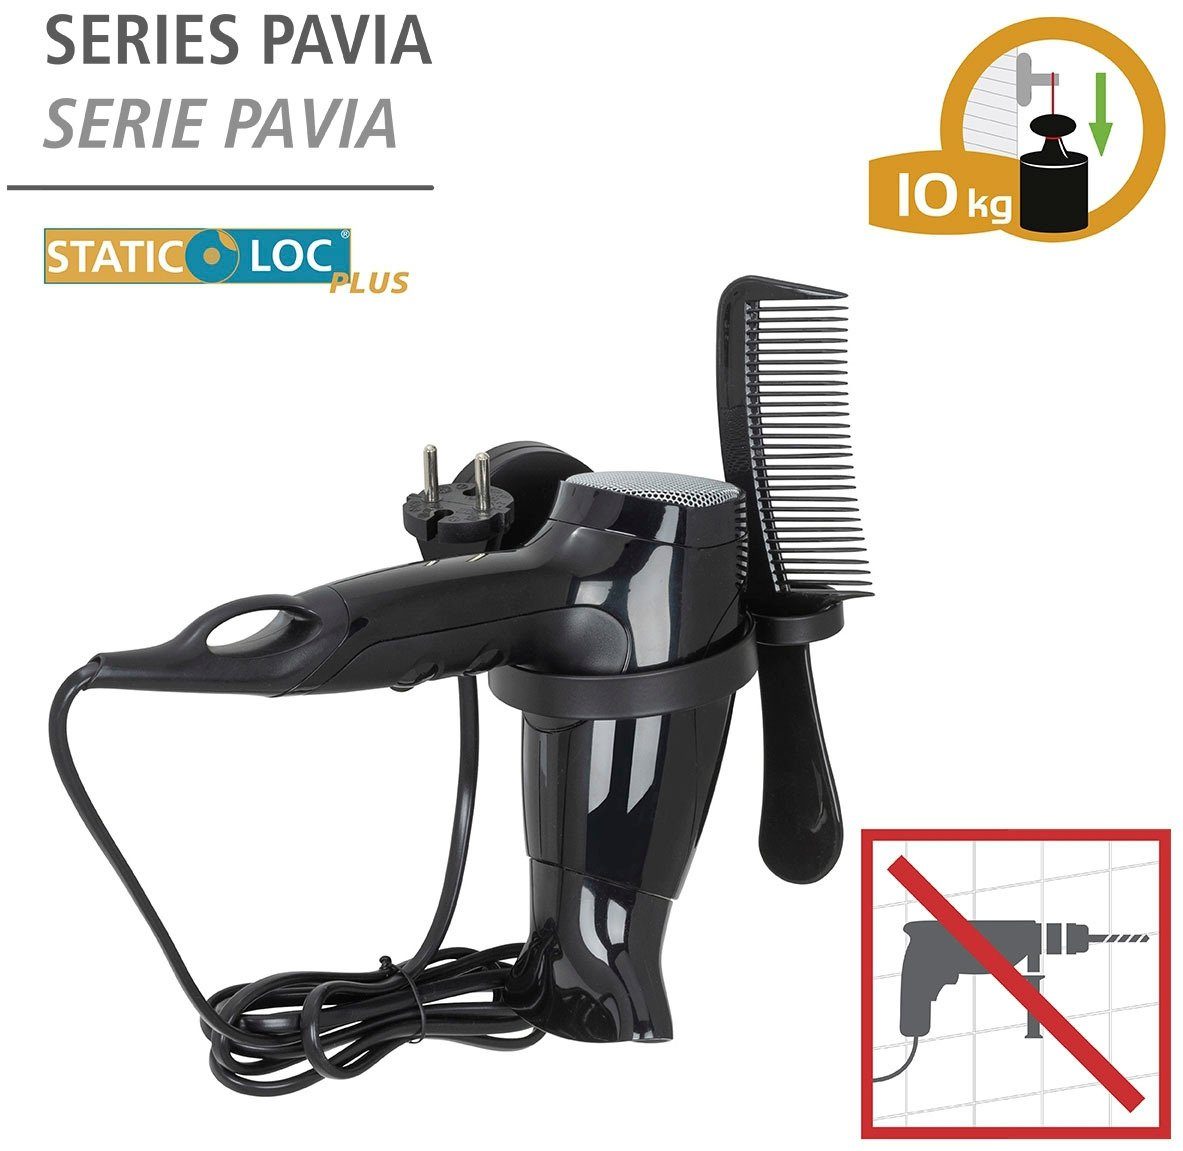 WENKO Plus ohne (Befestigen Pavia Static-Loc® Bohren) Haartrocknerhalter,